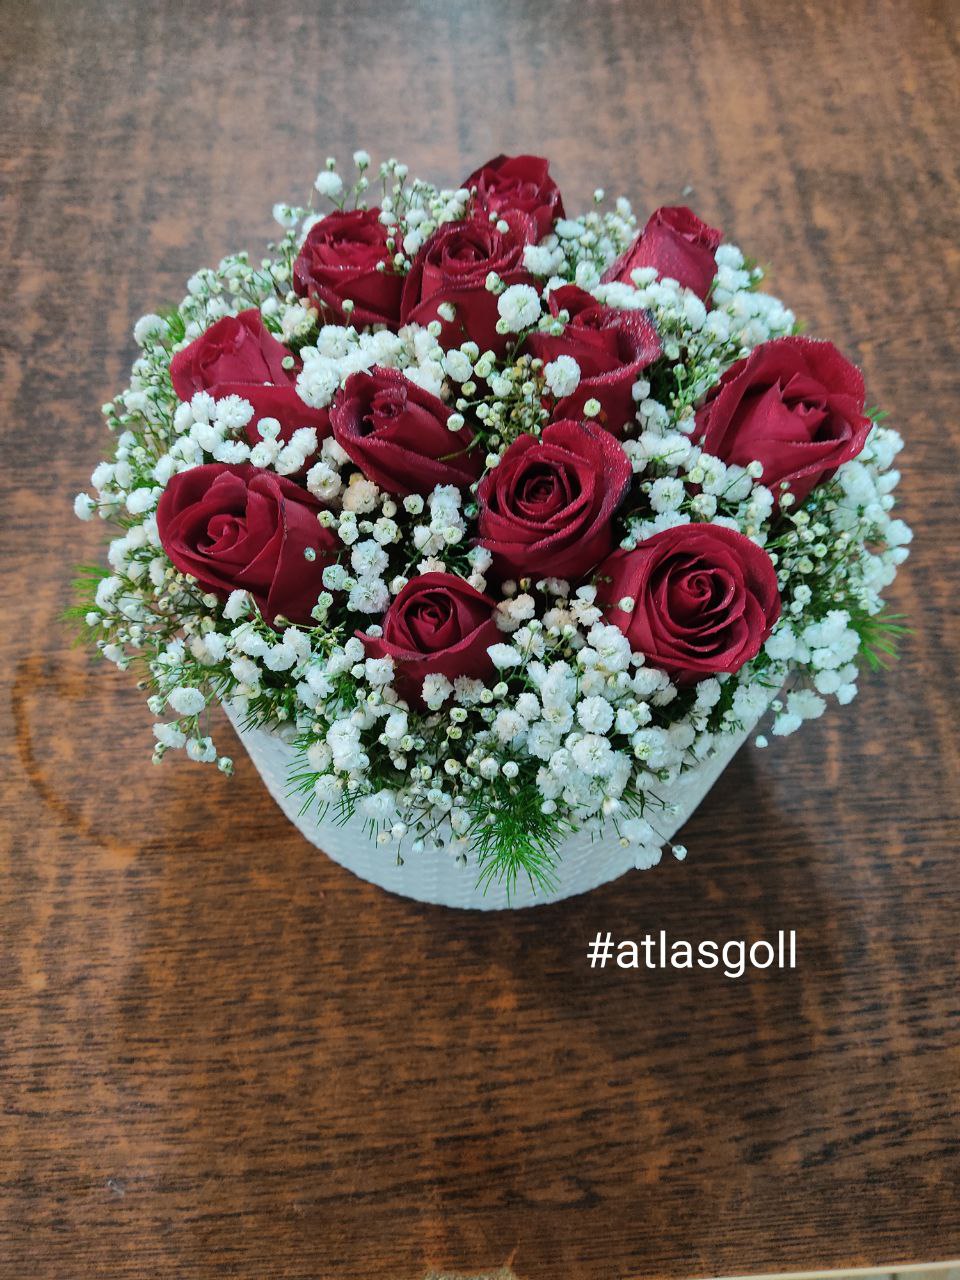 سفارش و خرید آنلاین باکس گل گرد رز هلندی طرح ایراندخت از گلفروشی اطلس گل در شیراز زیبا.